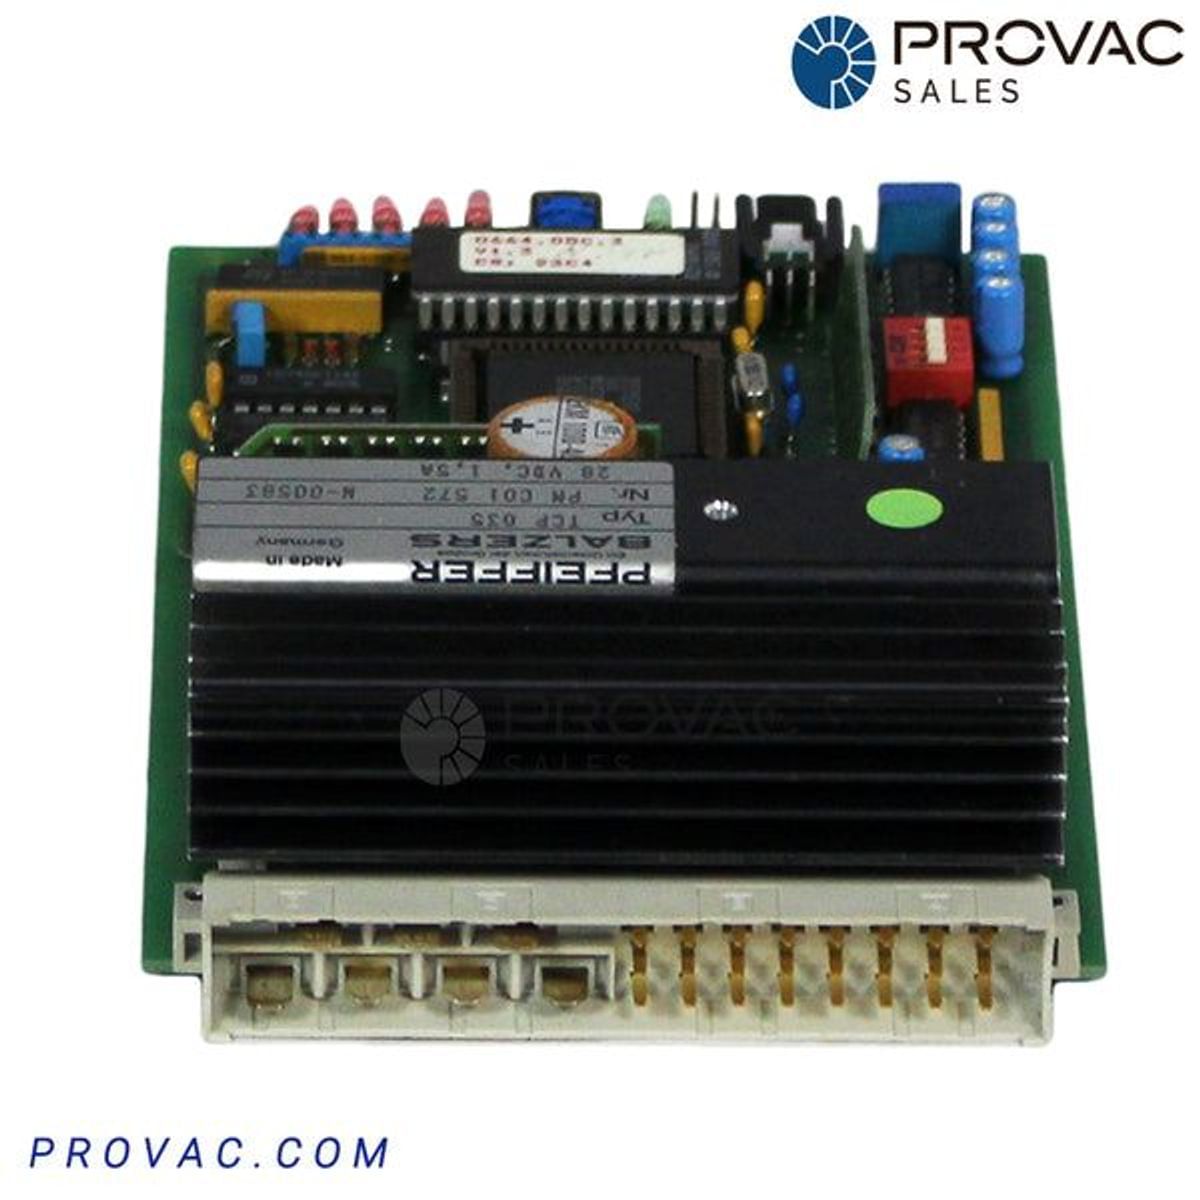 Balzers TCP-035PCB Turbo Pump Controller, Rebuilt Image 3